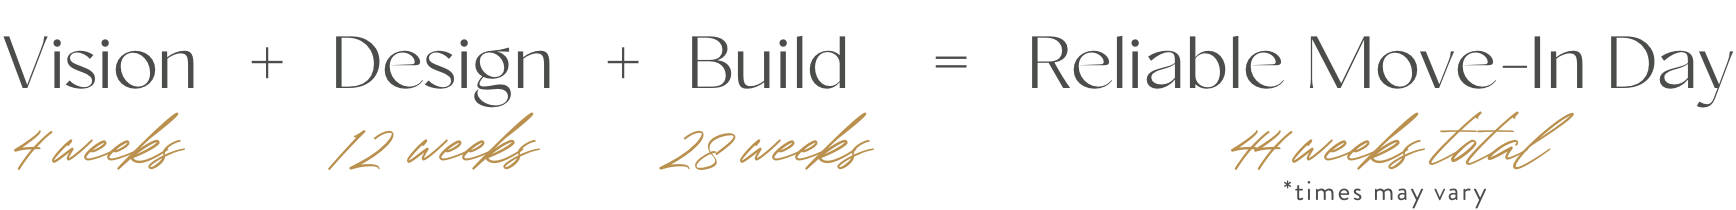 vision(4 weeks) + design(18 weeks) + build(30 weeks) = reliable move-in day(52 weeks total)